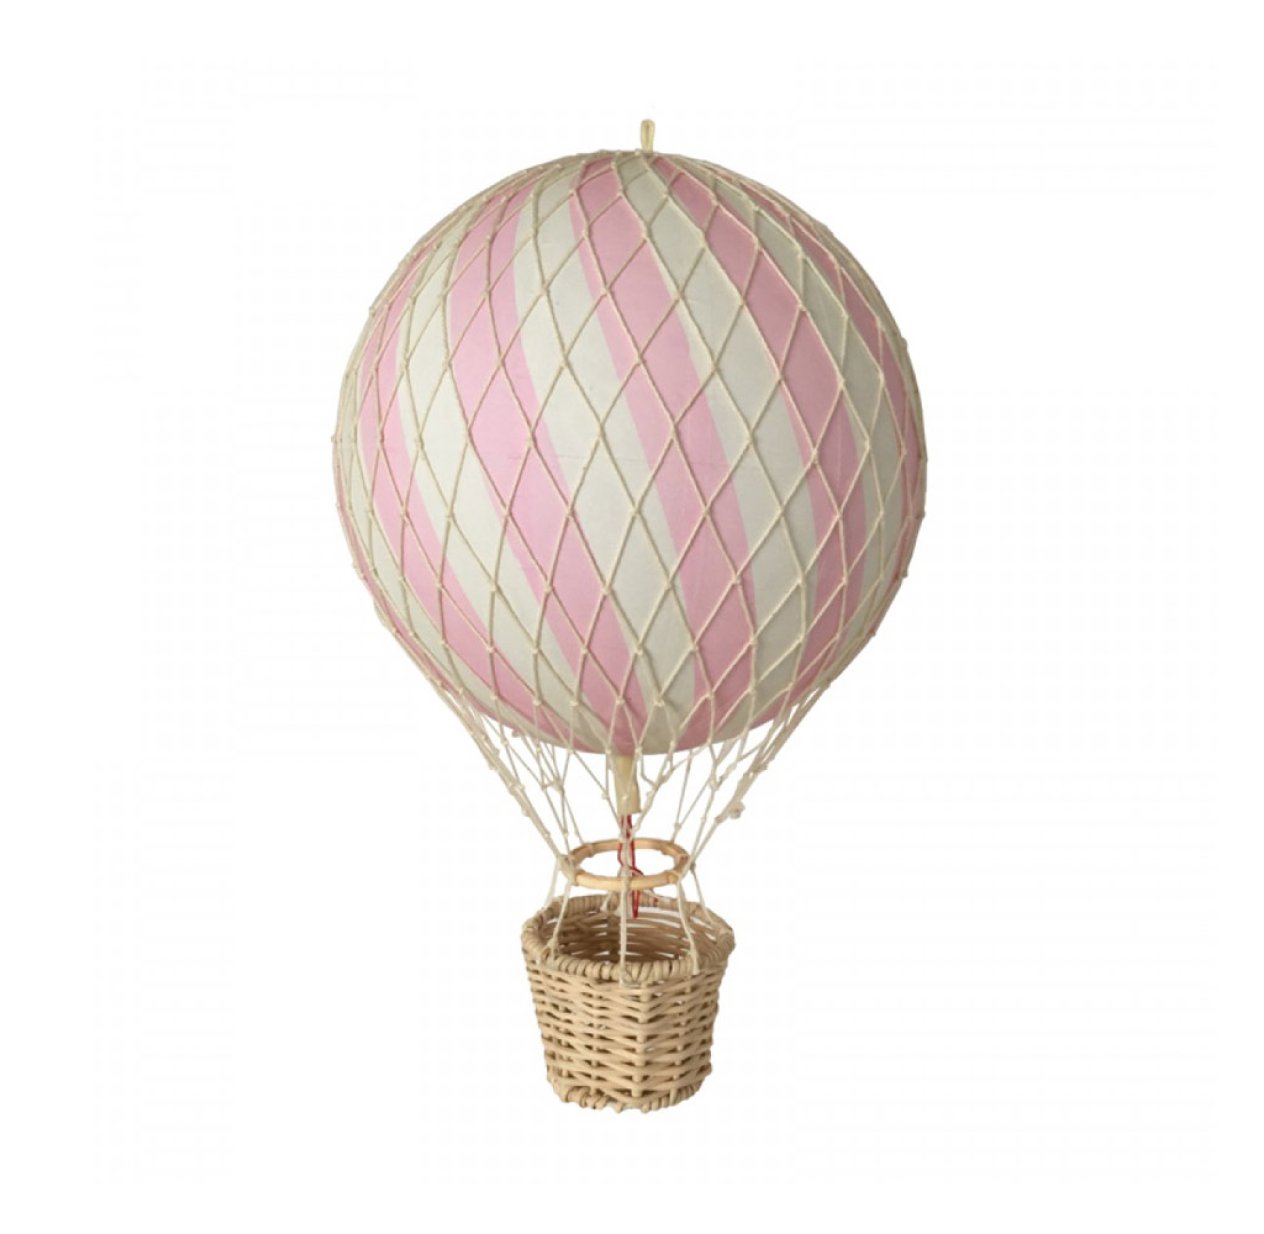 Сетка на шаре. Декоративный воздушный шар Filibabba. Сетка для воздушного шара. Воздушный шар с корзиной декор. Плетеный воздушный шар.